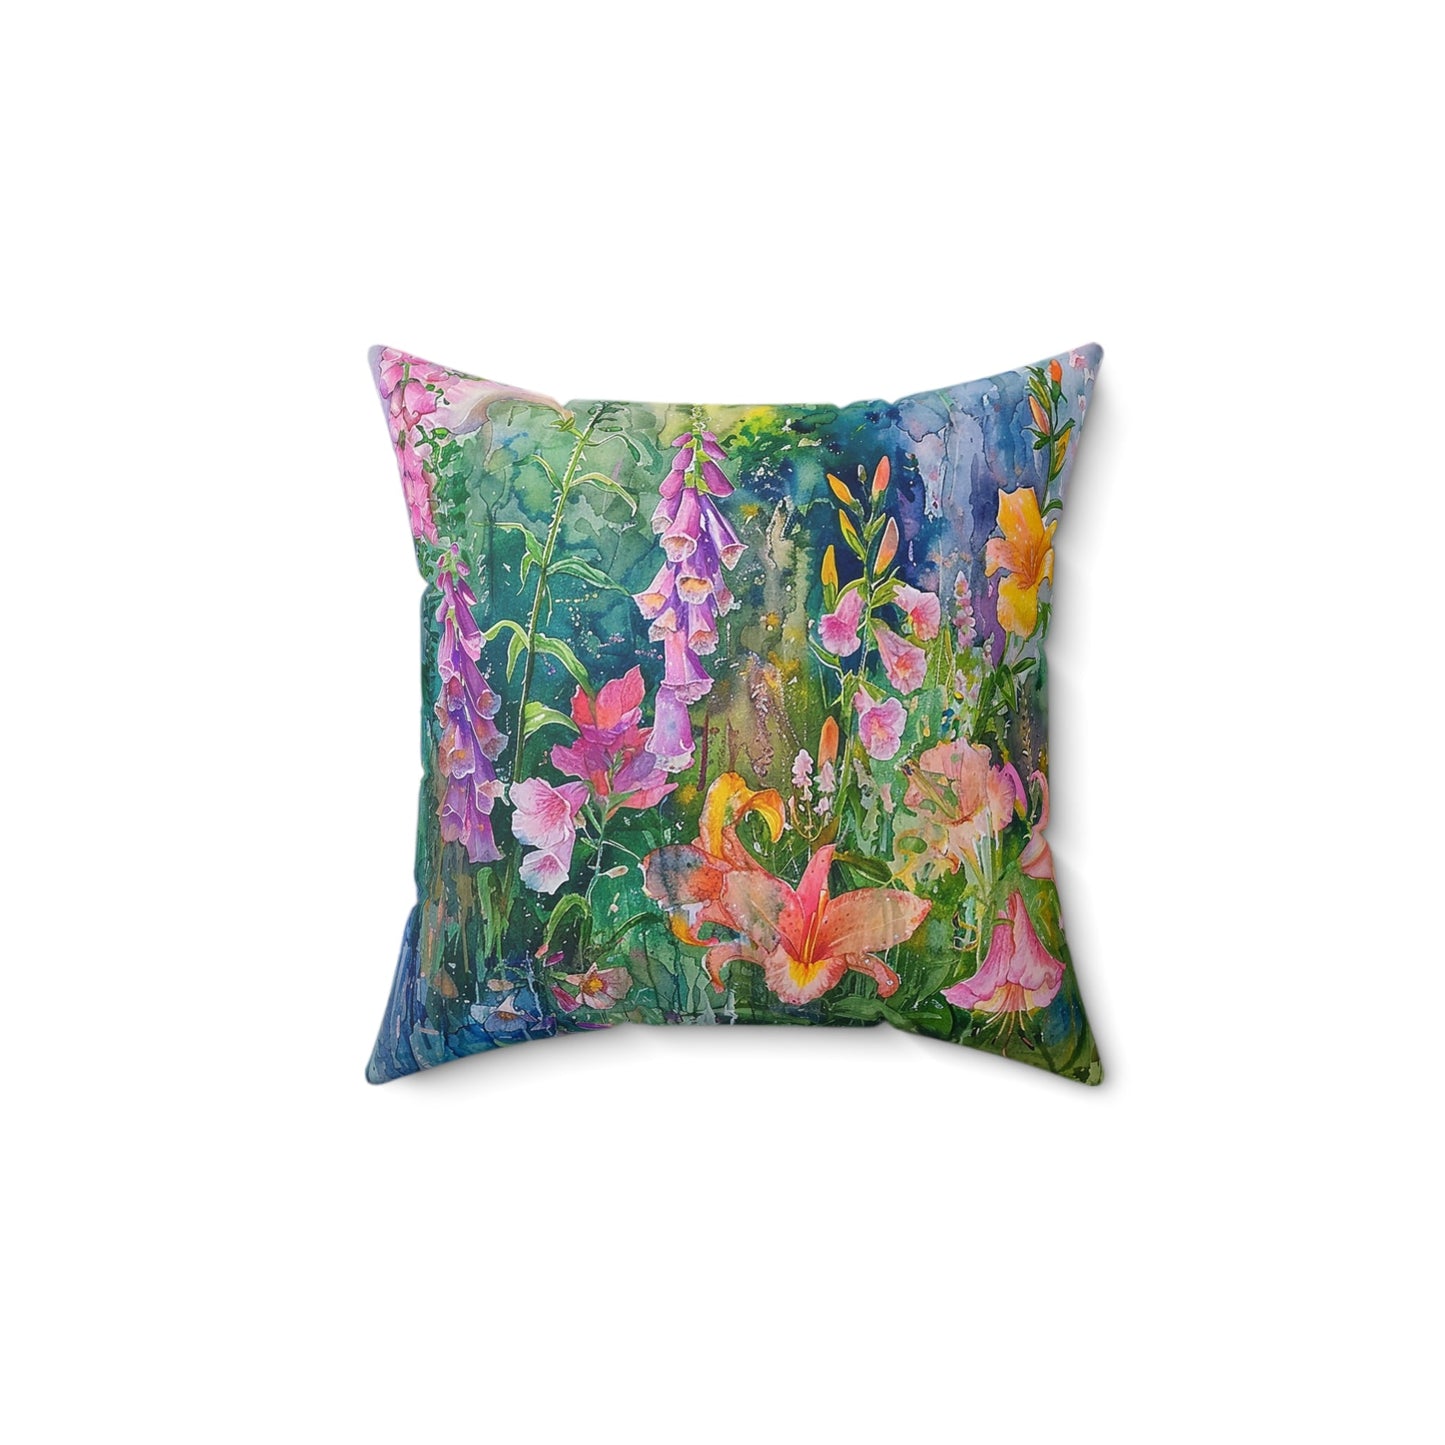 Floral Garden Throw Pillow, Bright Boho Garden Decor Cushion, Summer Garden - FlooredByArt